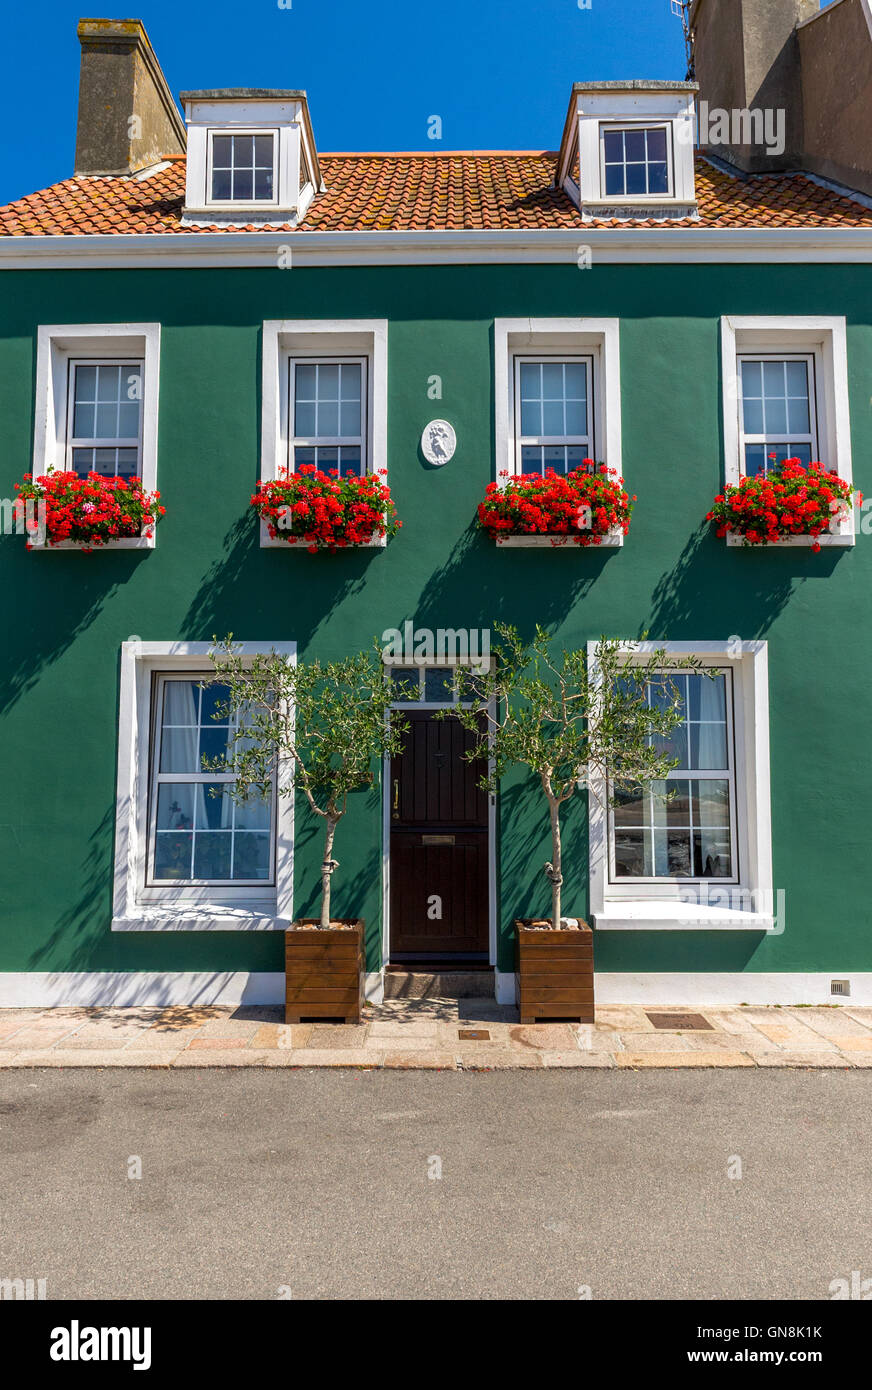 Casa pintada de verde fotografías e imágenes de alta resolución - Alamy